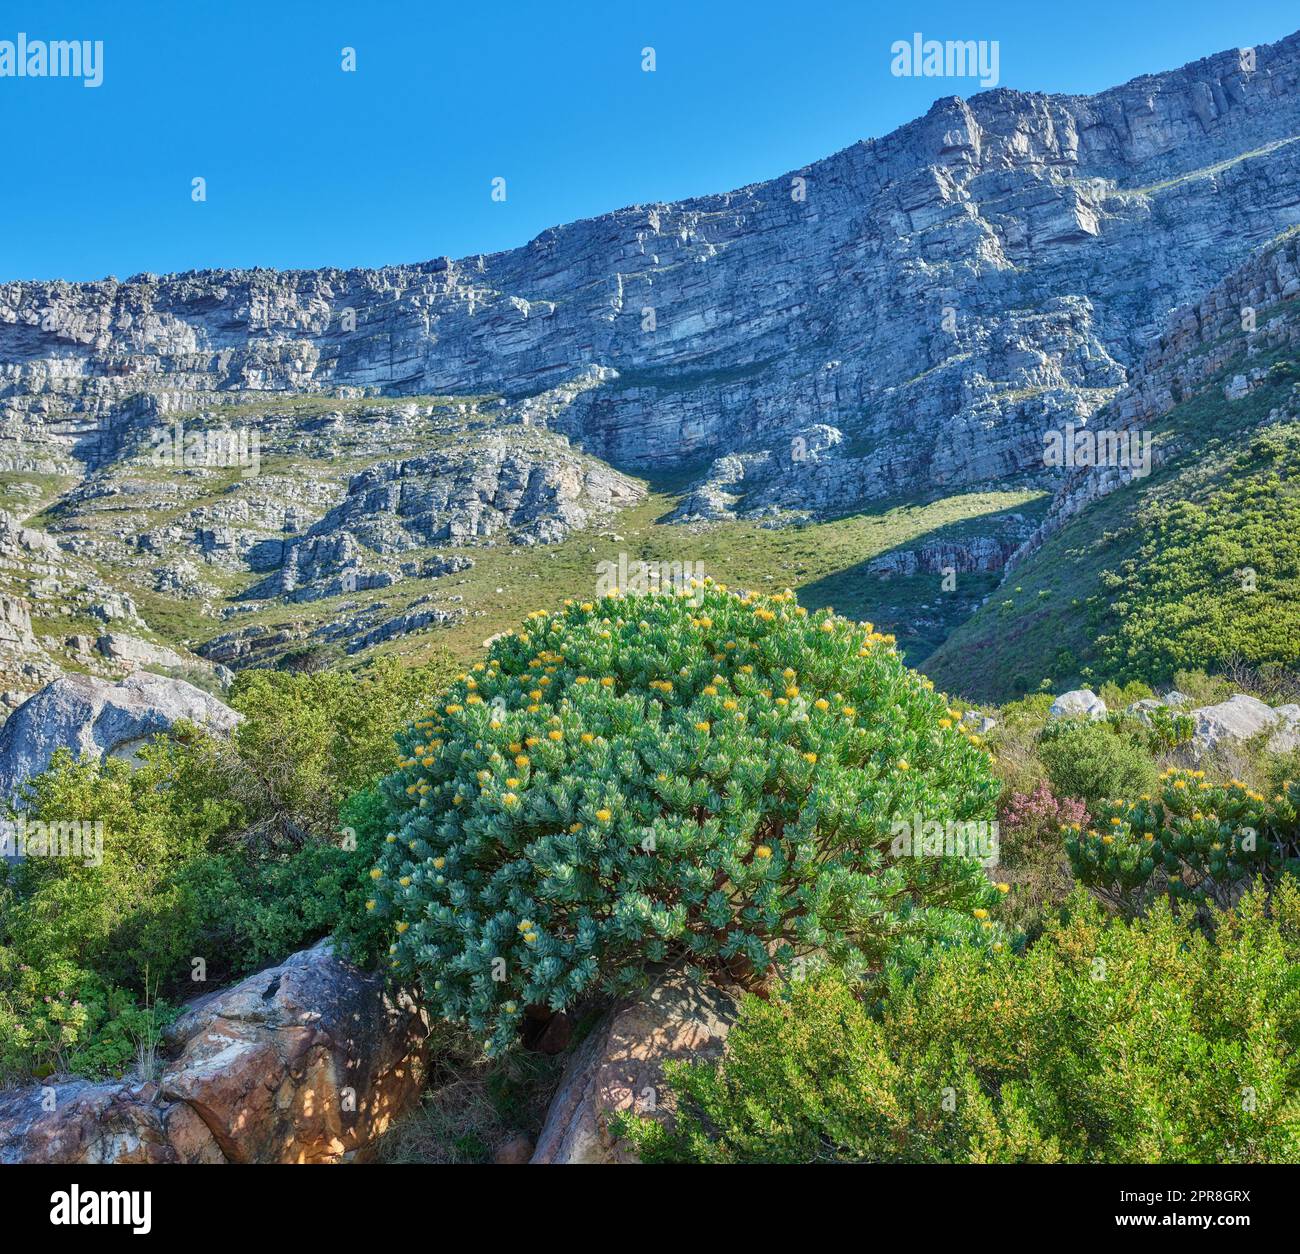 Magnifique paysage de Table Mountain avec des plantes vertes et un fond bleu ciel. Vue paisible et panoramique sur un sommet ou un sommet avec une végétation luxuriante en plein air dans la nature, par une journée d'été Banque D'Images